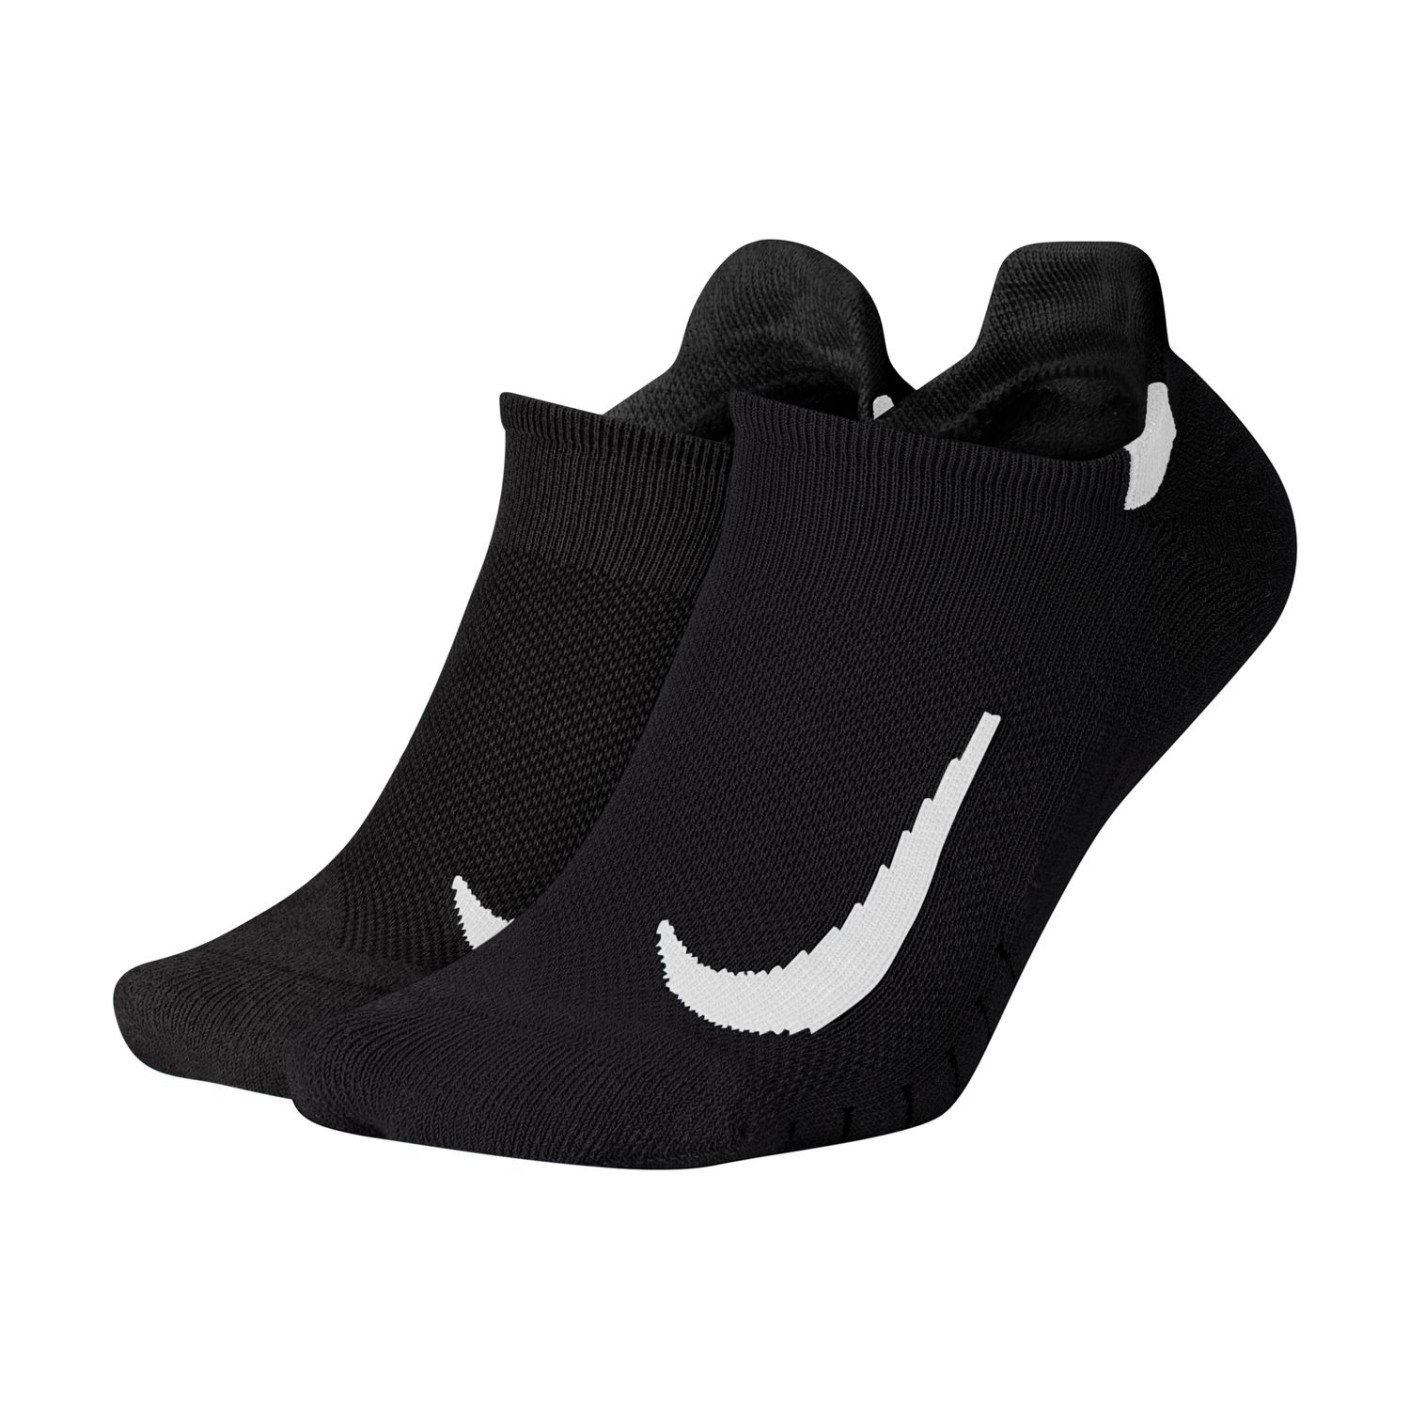 recept behuizing Voor type Nike Multiplier No-Show Enkelsokken 2-Pack Zwart Wit